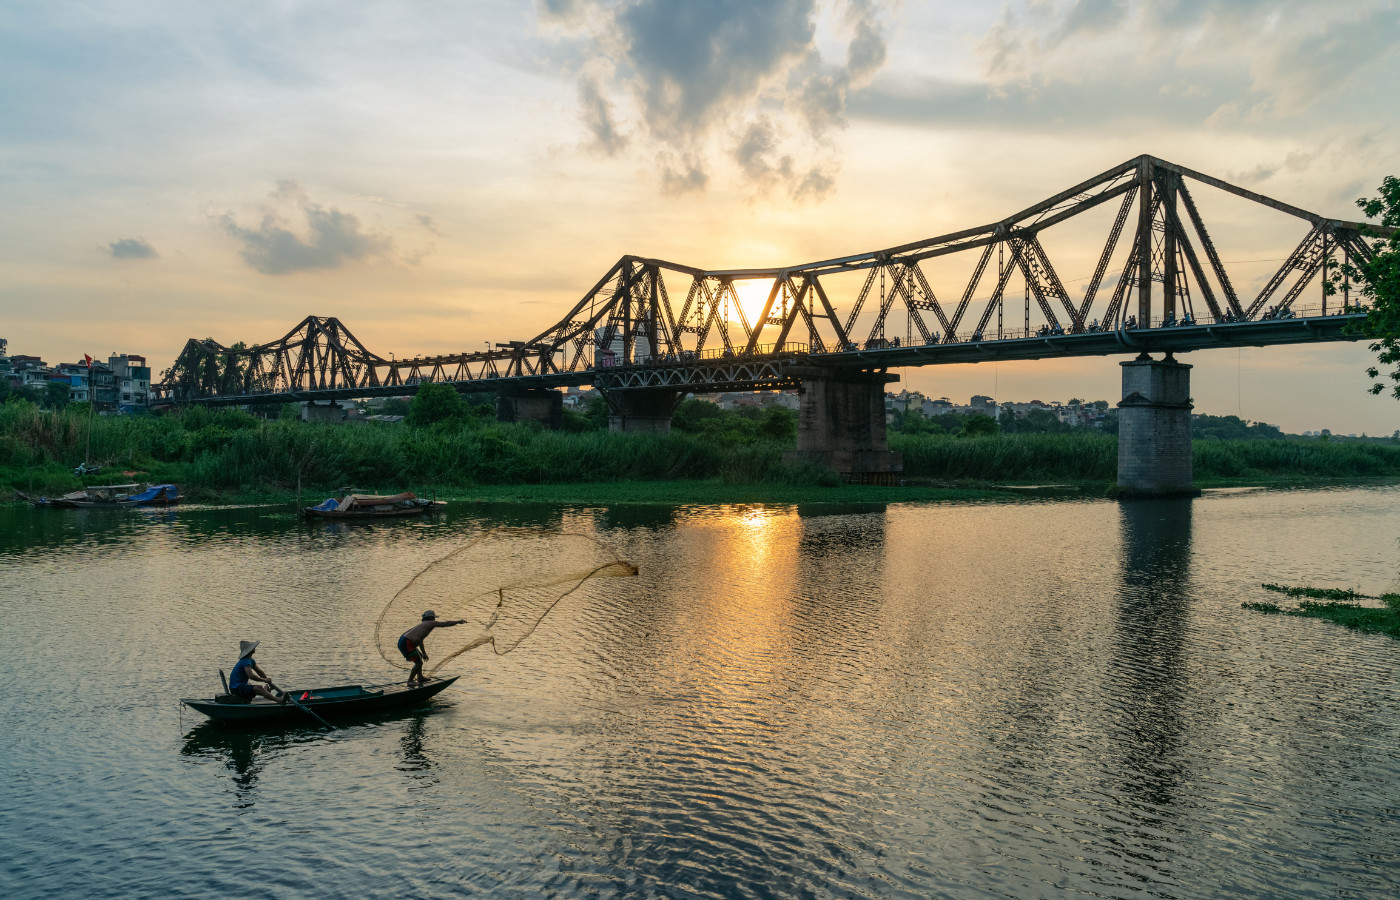 Khám phá cầu Long Biên - Biểu tượng văn hóa, lịch sử của Hà Nội 5